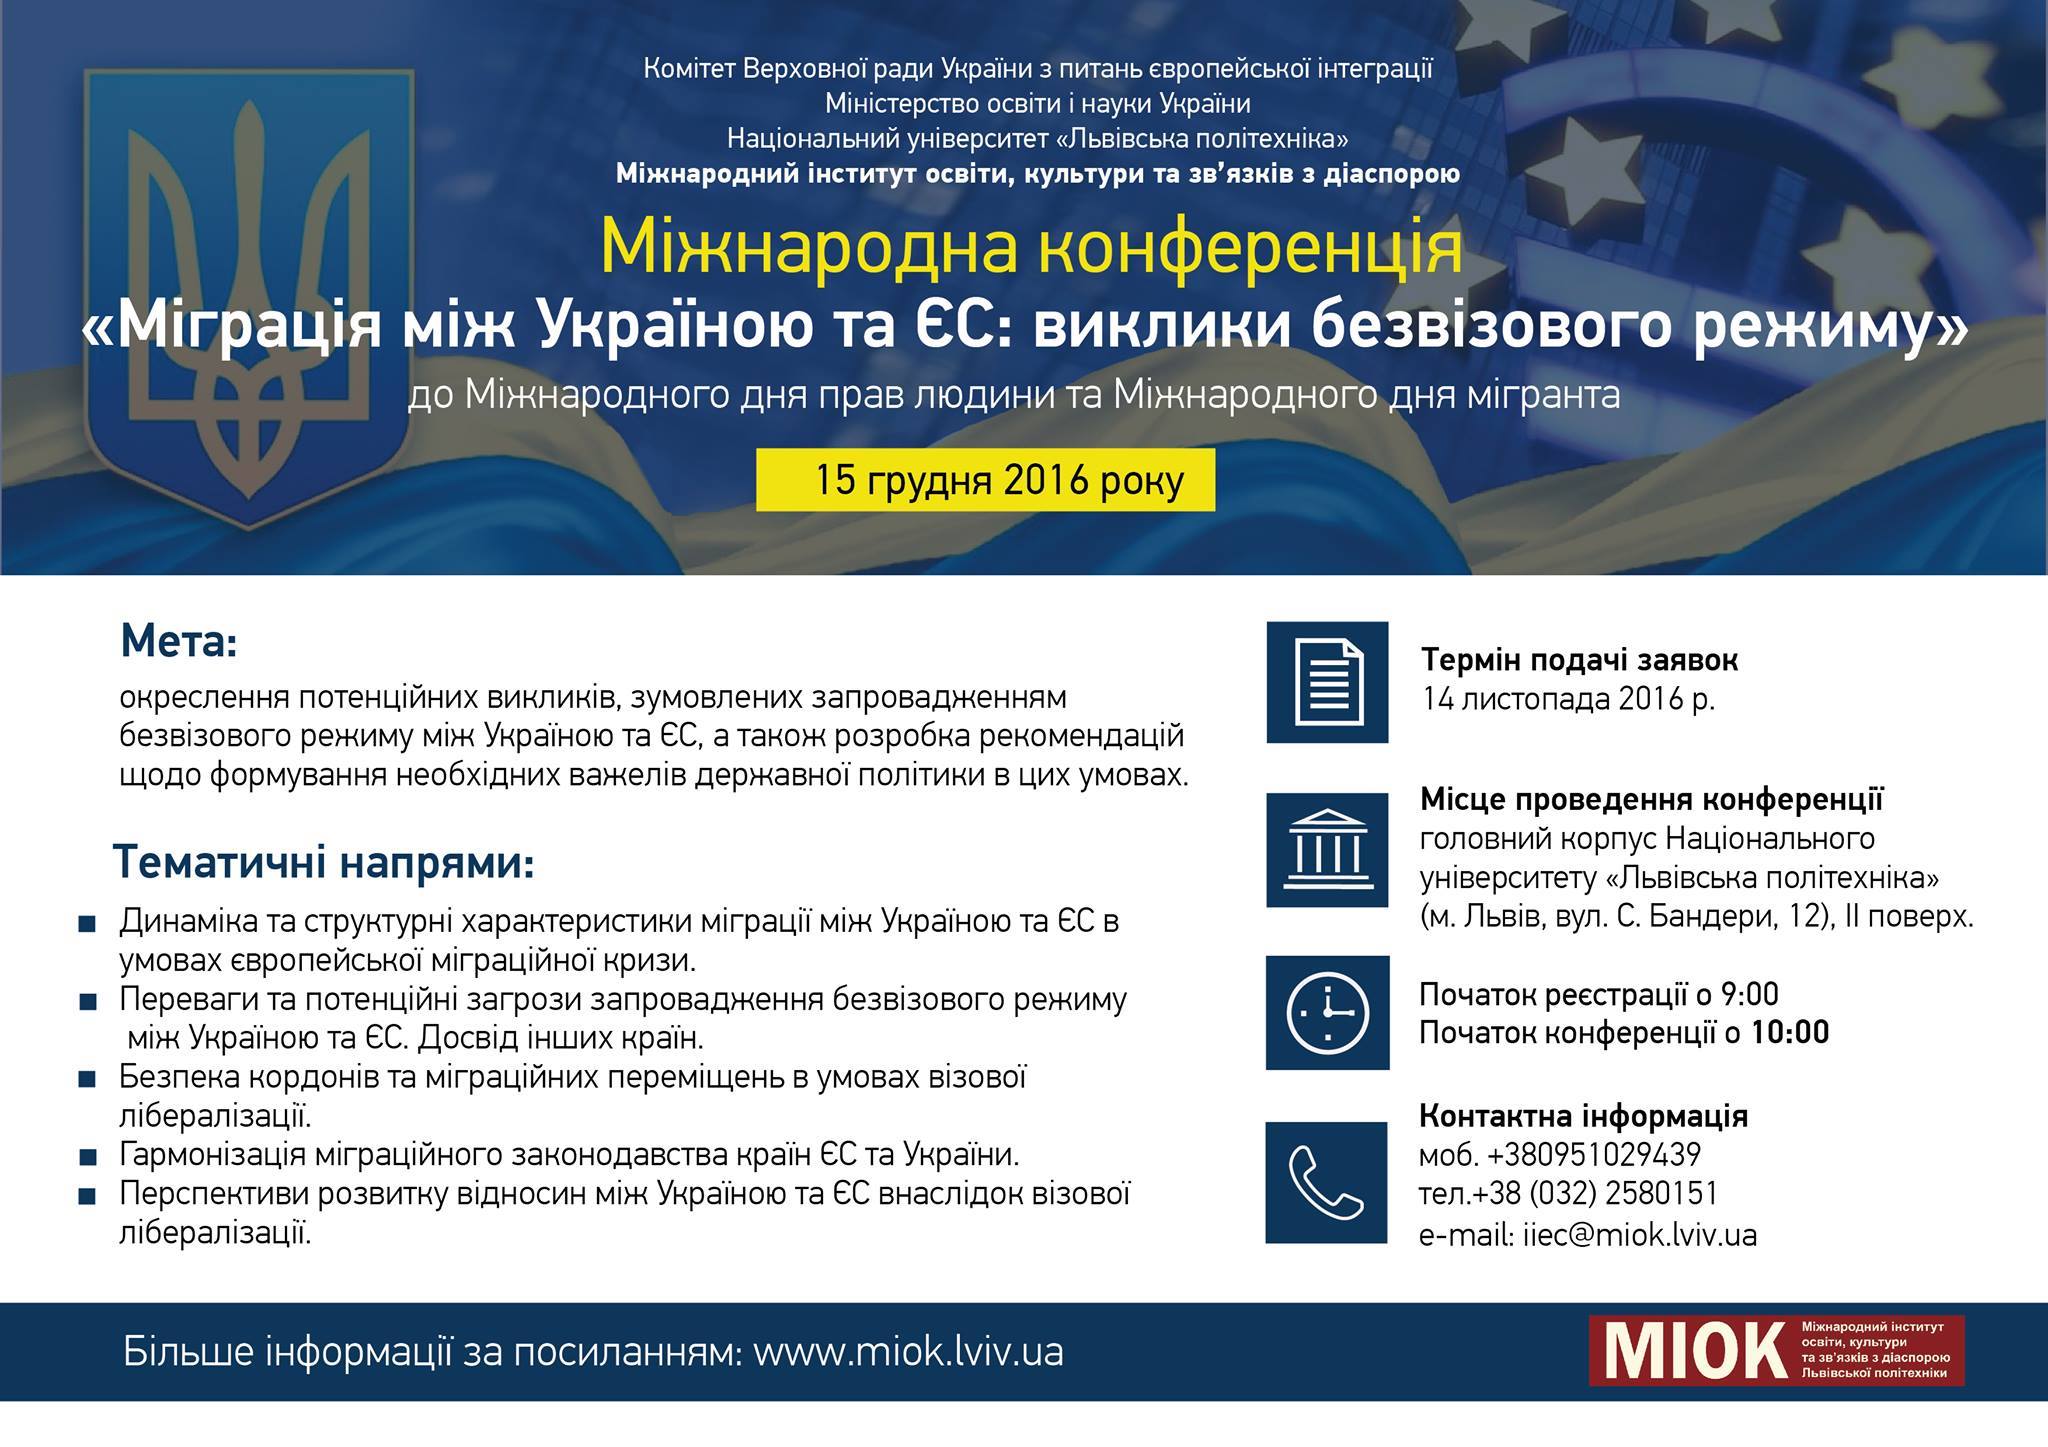 Міжнародна конференція «Міграція між Україною та ЄС»